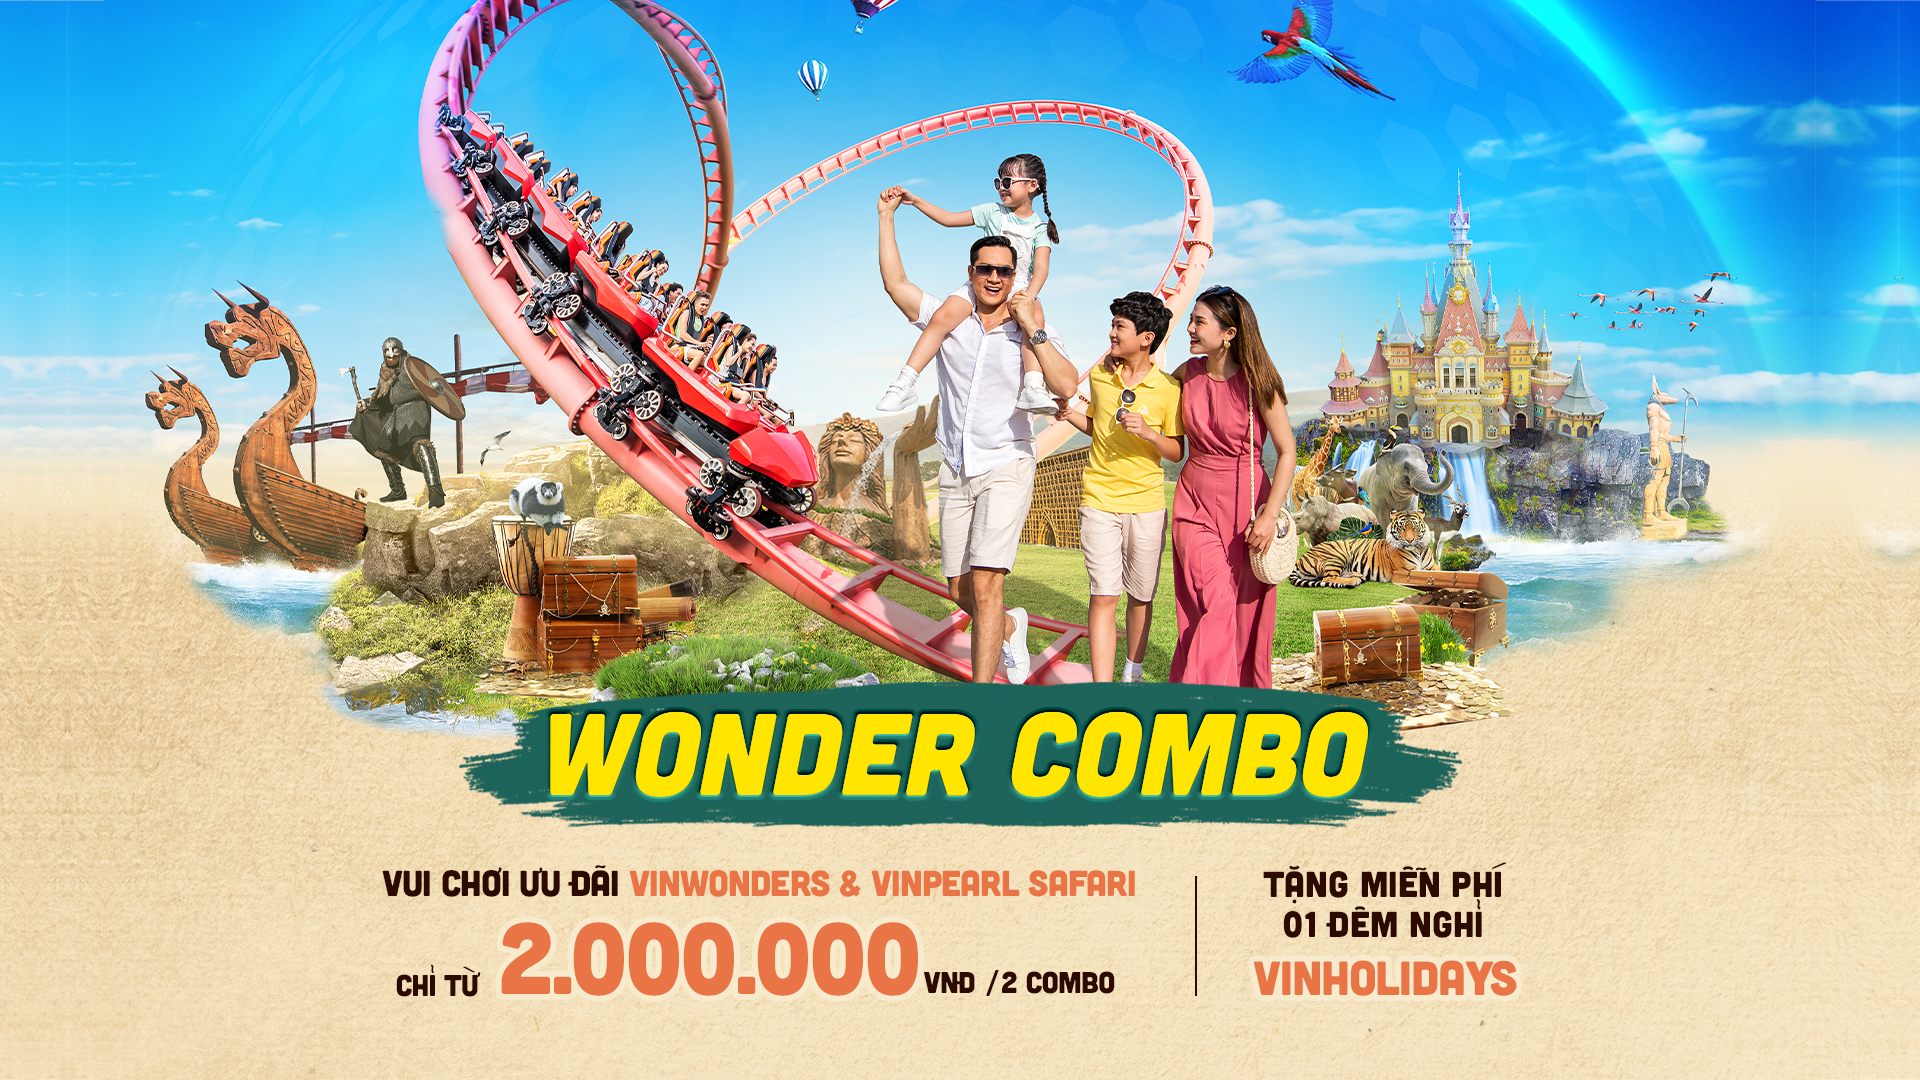 [PHÚ QUỐC] - WONDER COMBO - Mua vé vui chơi miễn phí đêm nghỉ - Chỉ 1.000.000/khách